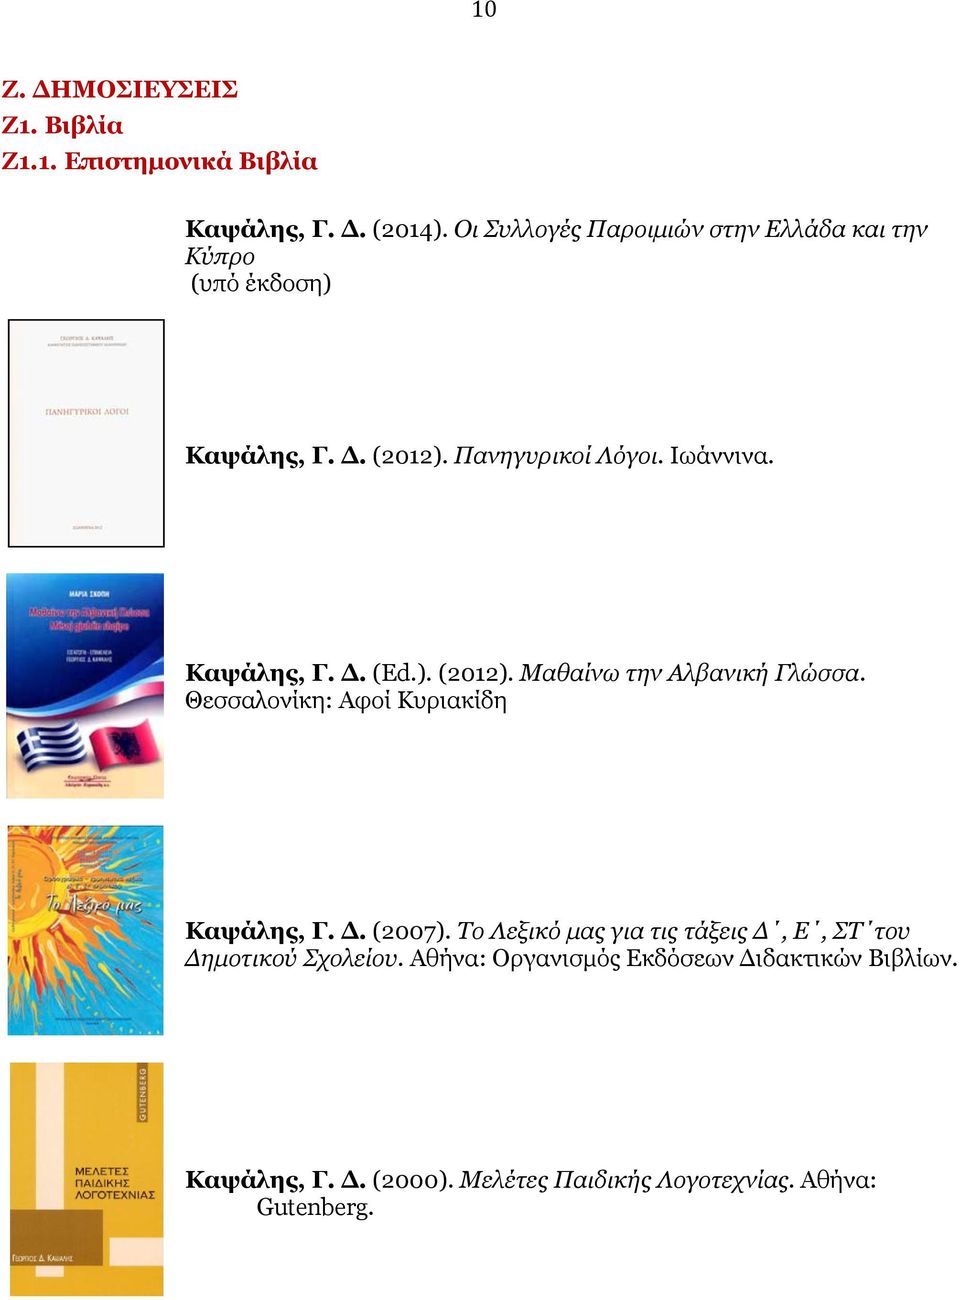 Καψάλης, Γ. Δ. (Ed.). (2012). Μαθαίνω την Αλβανική Γλώσσα. Θεσσαλονίκη: Αφοί Κυριακίδη Καψάλης, Γ. Δ. (2007).